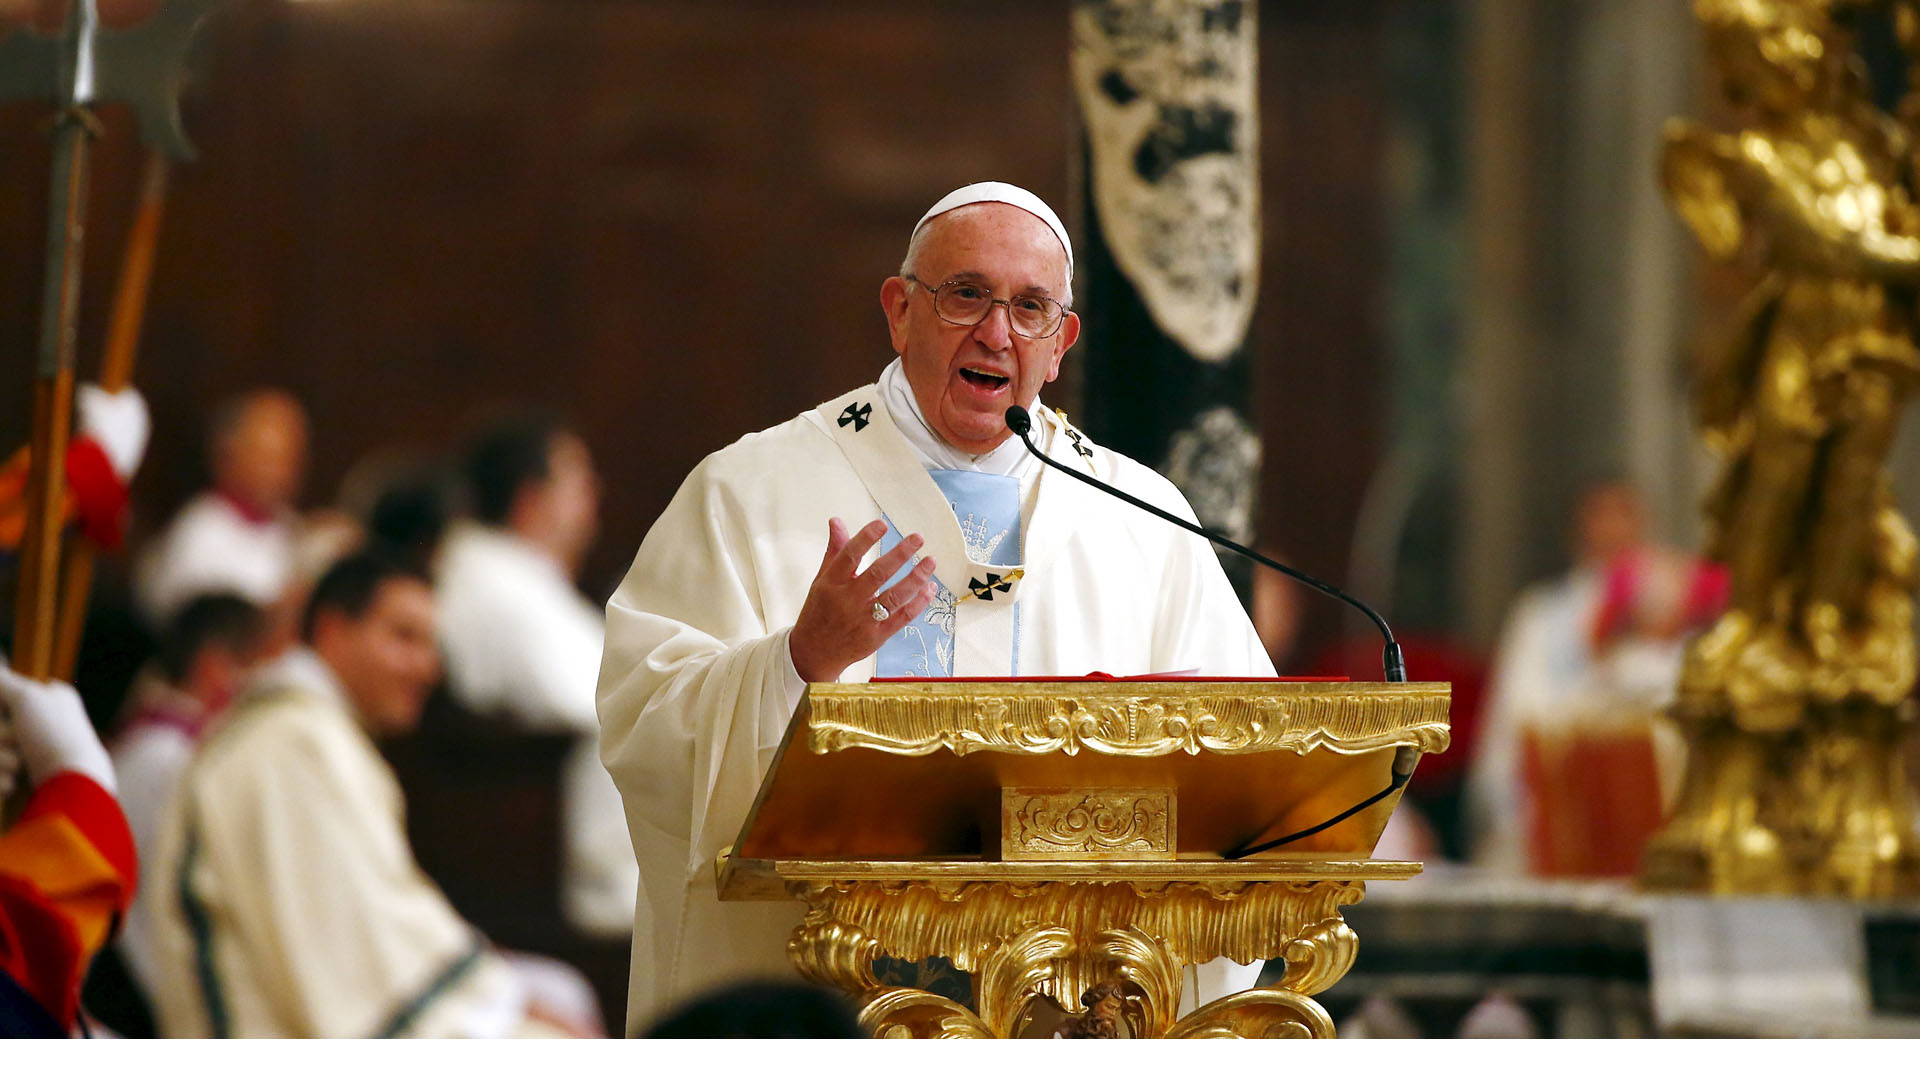 El sumo pontífice explicará en español cuales son los retos de la humanidad por los que se debe orar. El primer vídeo se publicará el 6 de enero